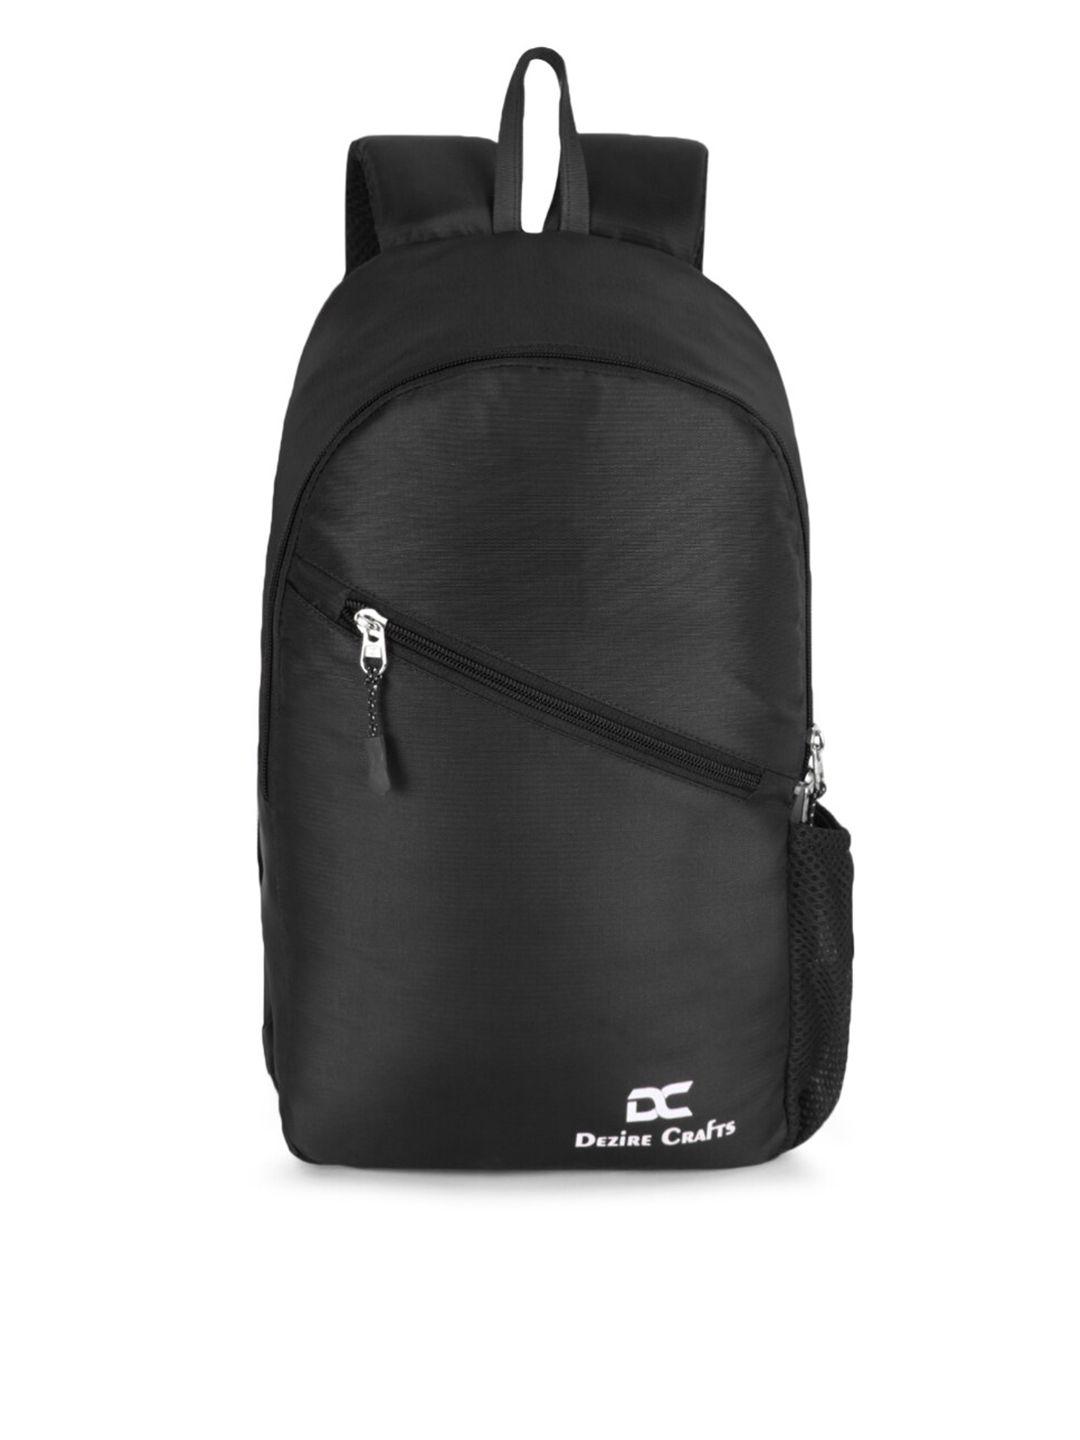 dezire crafts unisex black solid backpack